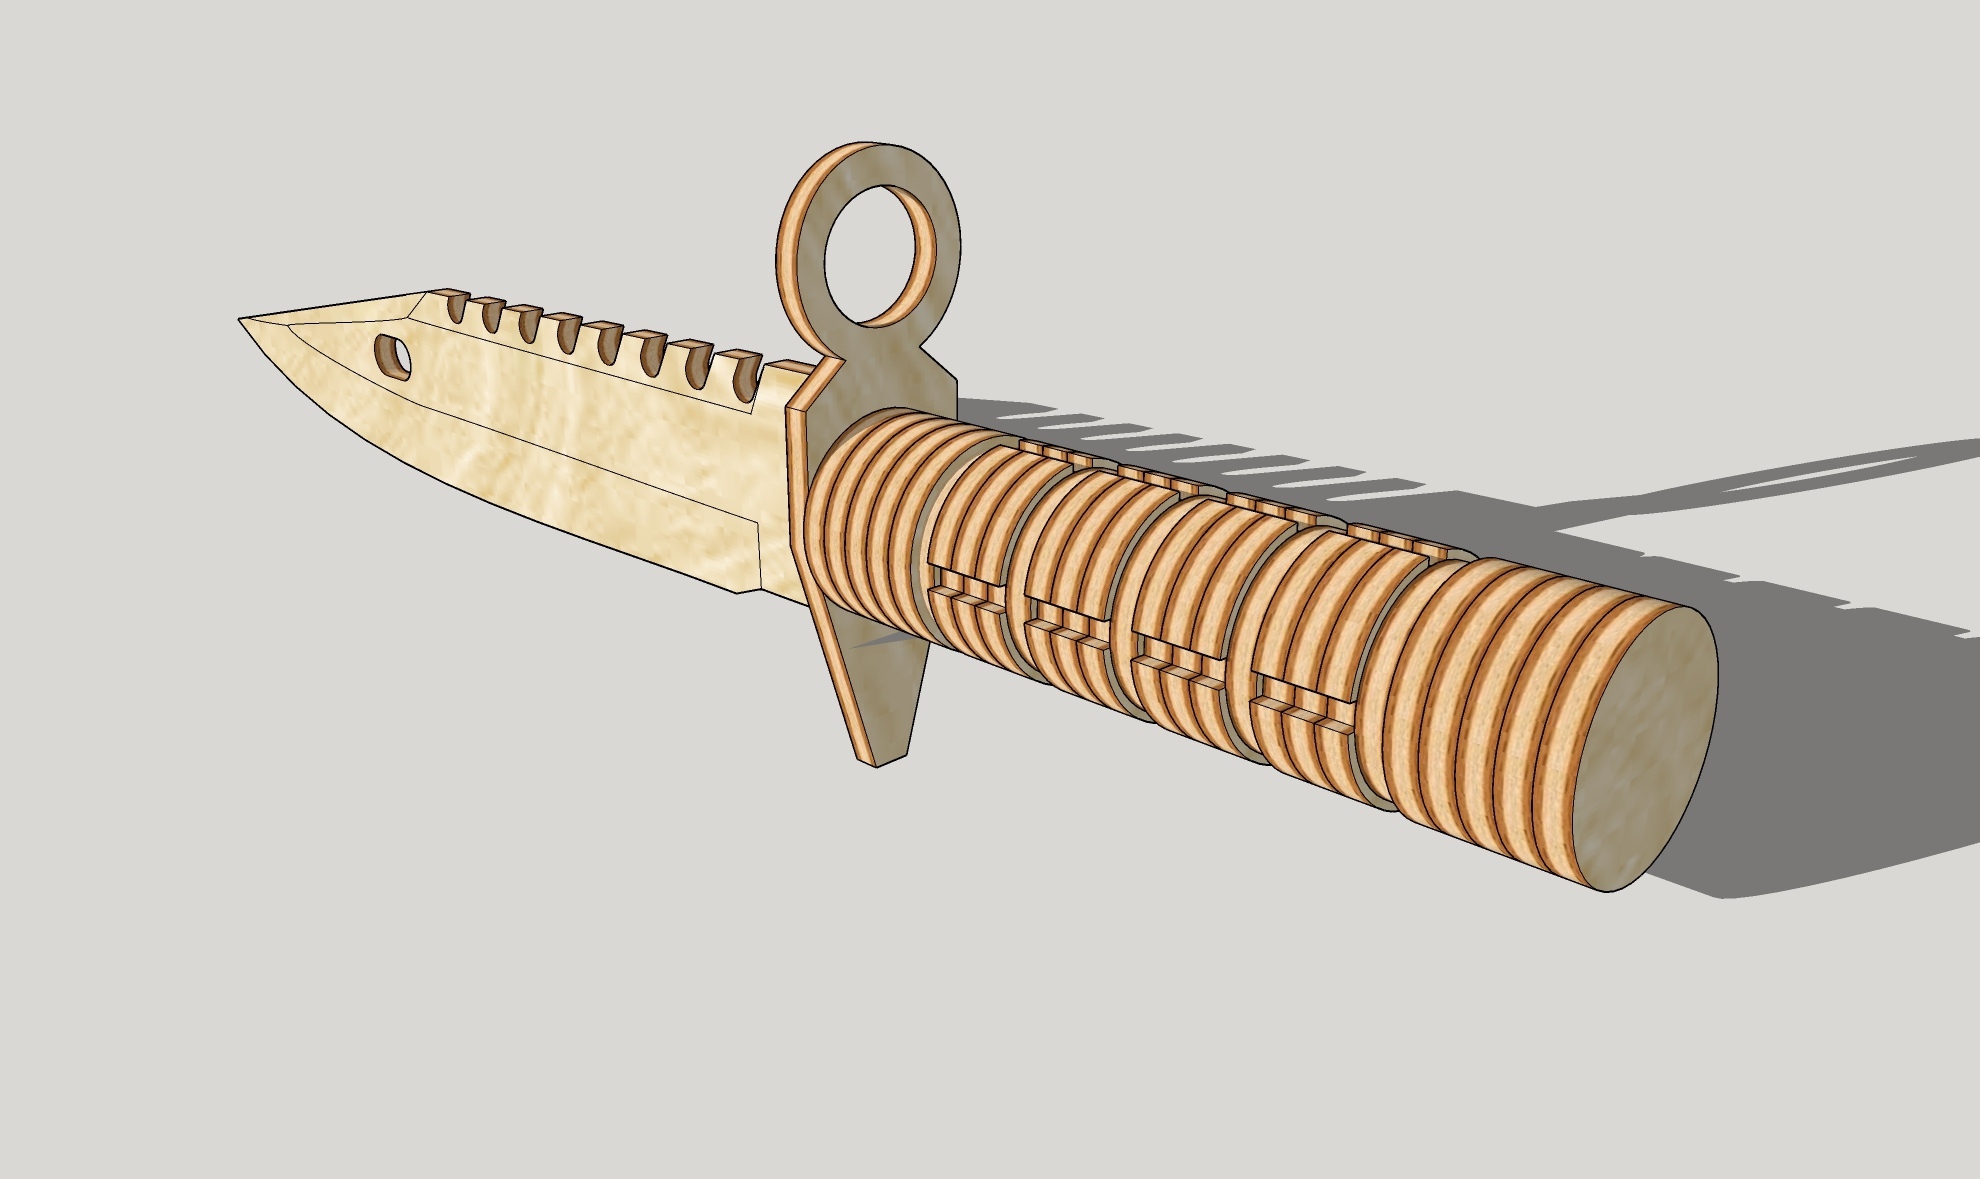 Modelo de faca de madeira cortada a laser